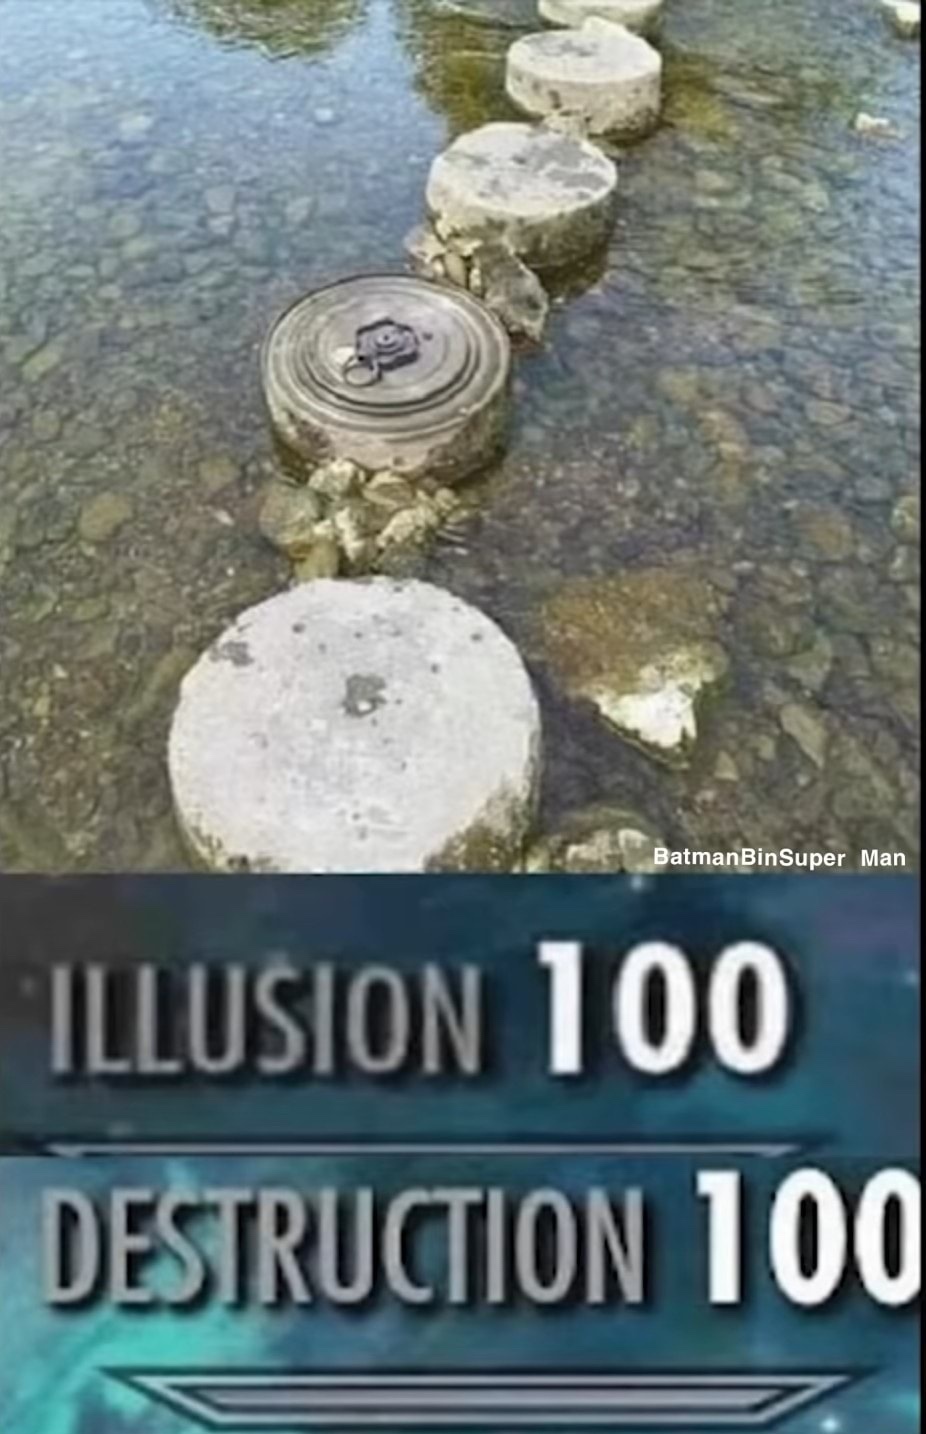 illusion and destruction 100 - meme